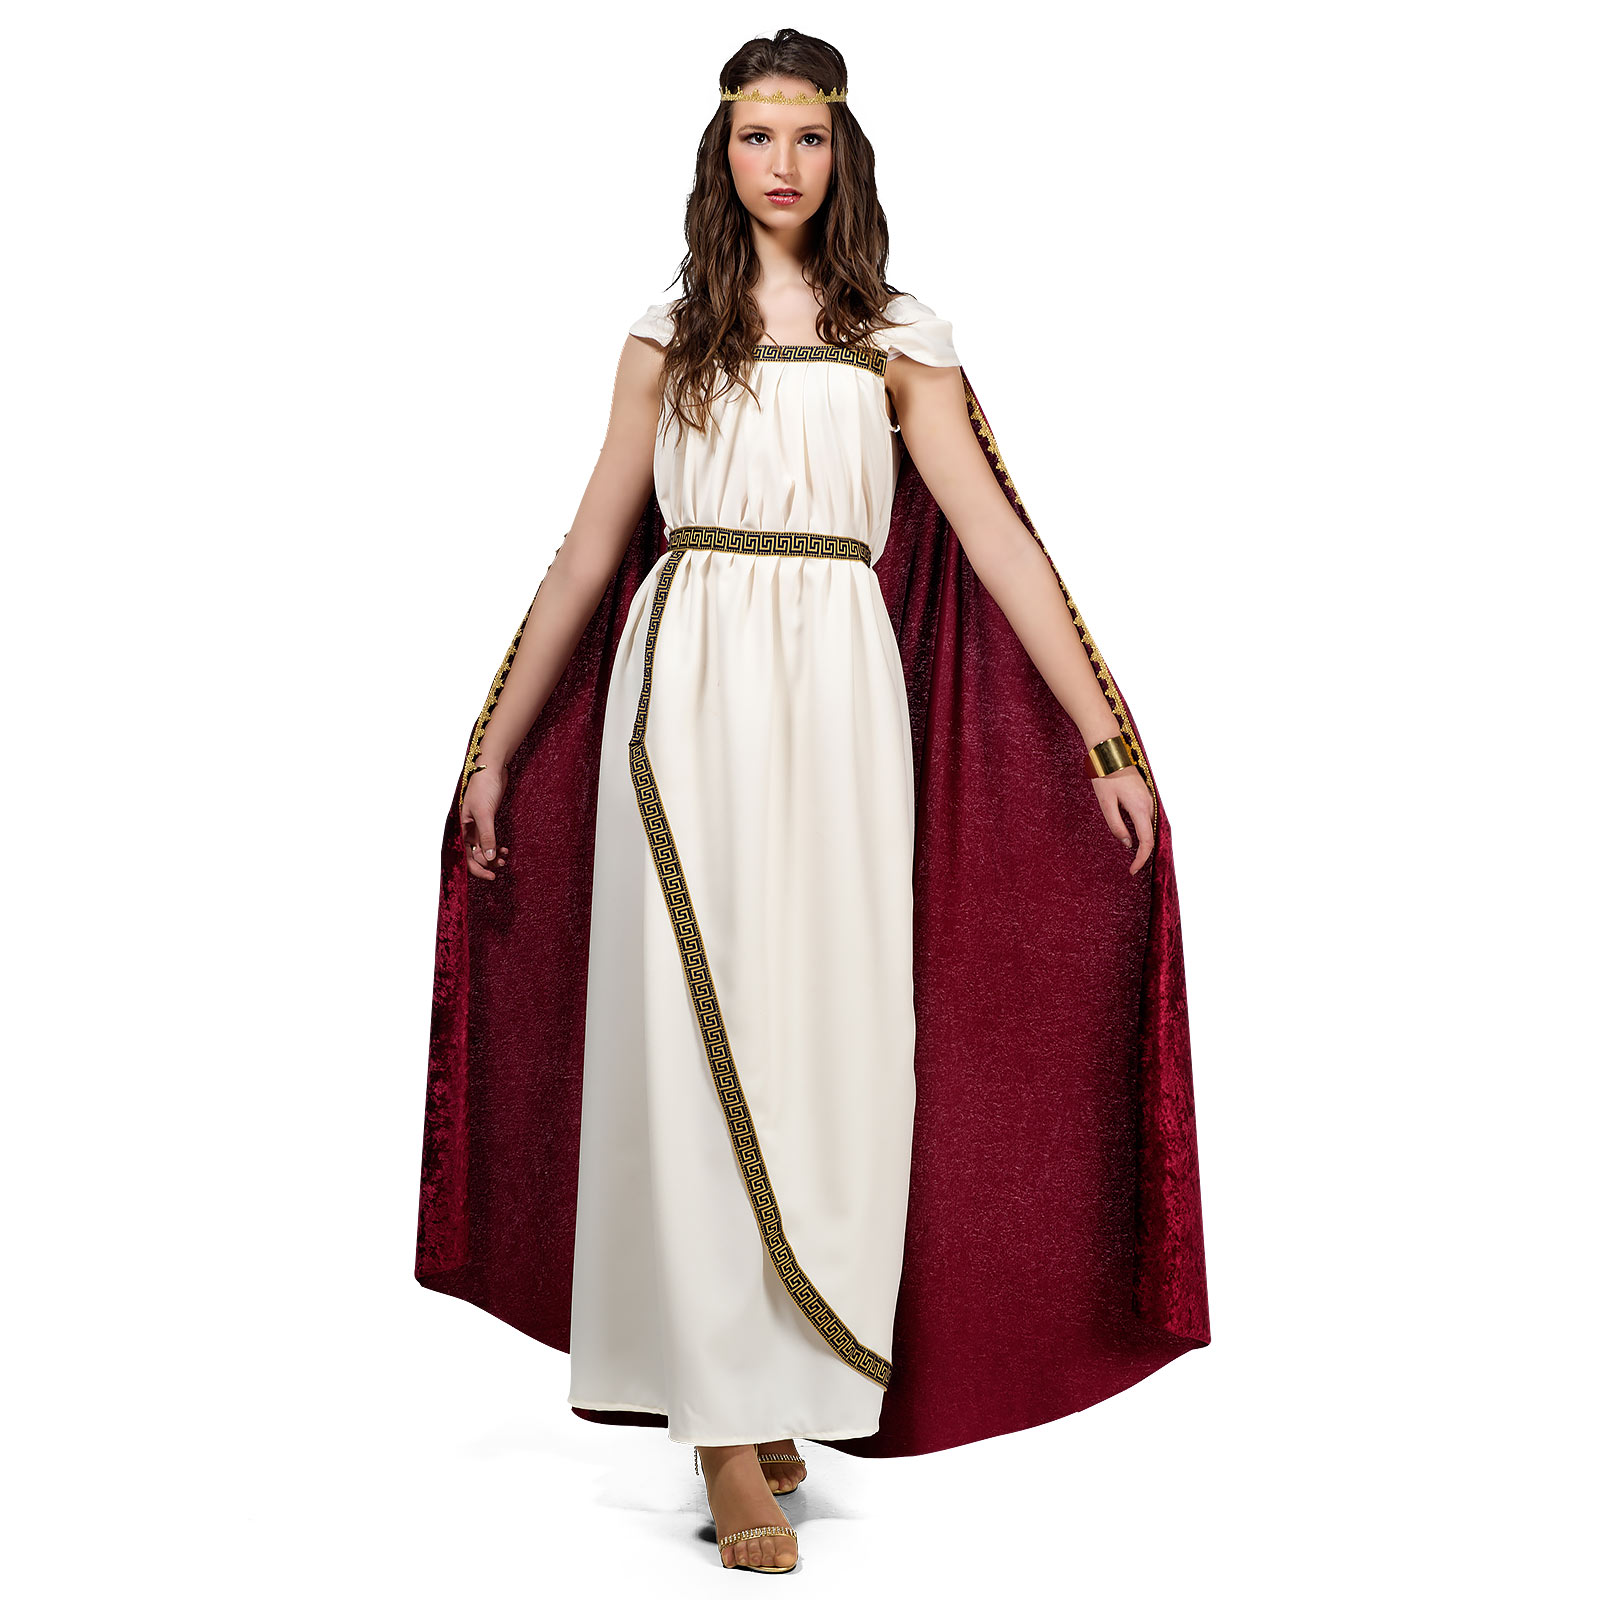 Trojan Woman - Women's Costume